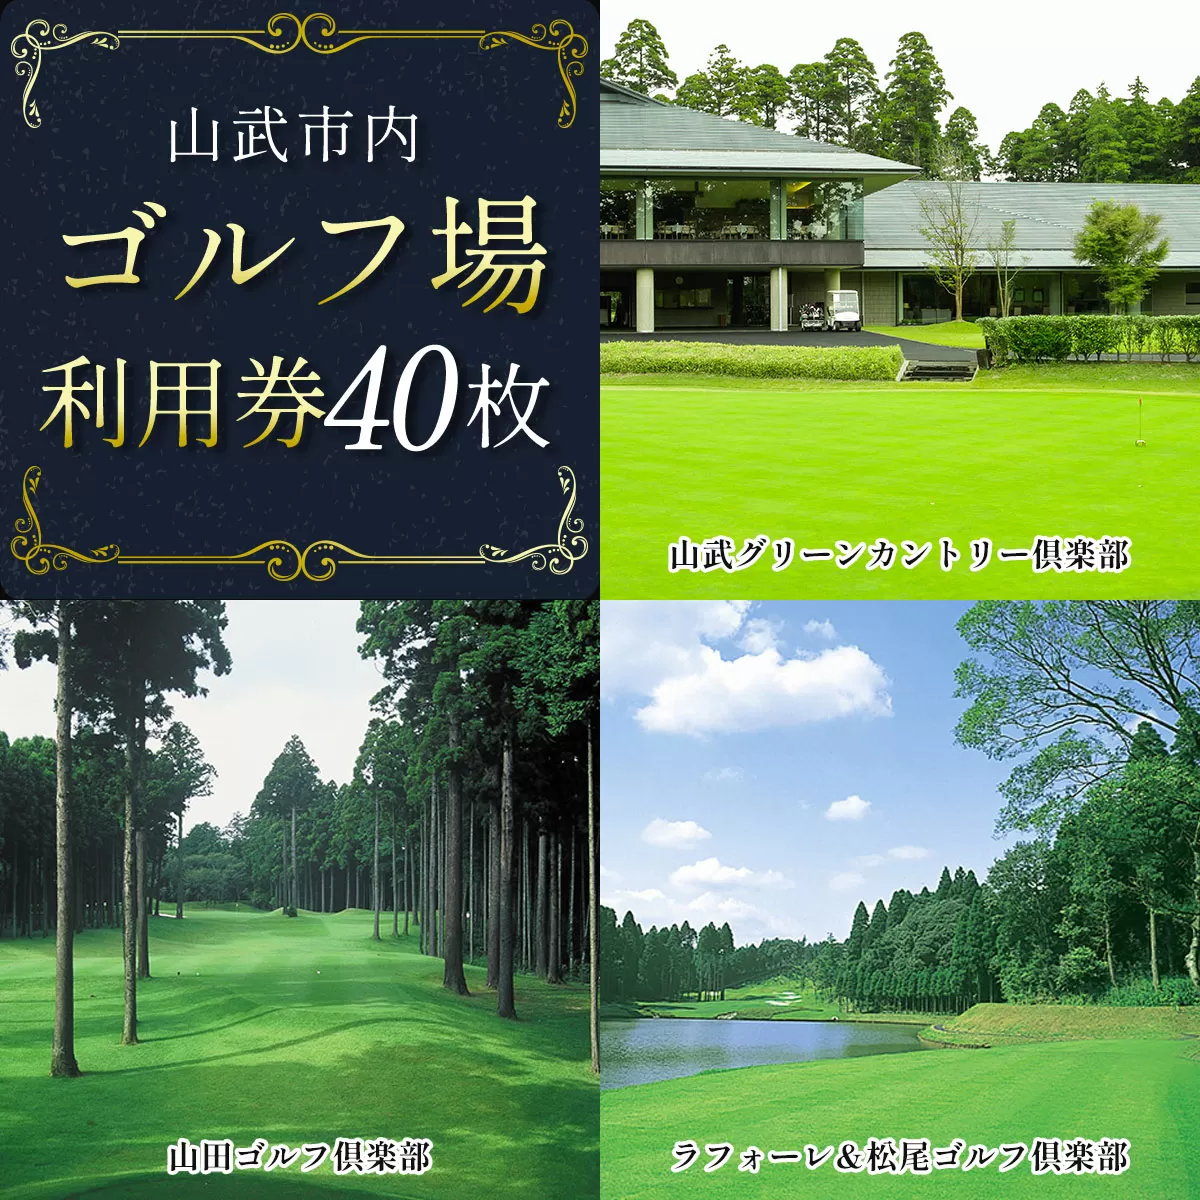 【山武市内】ゴルフ場利用券40枚 SMBJ013